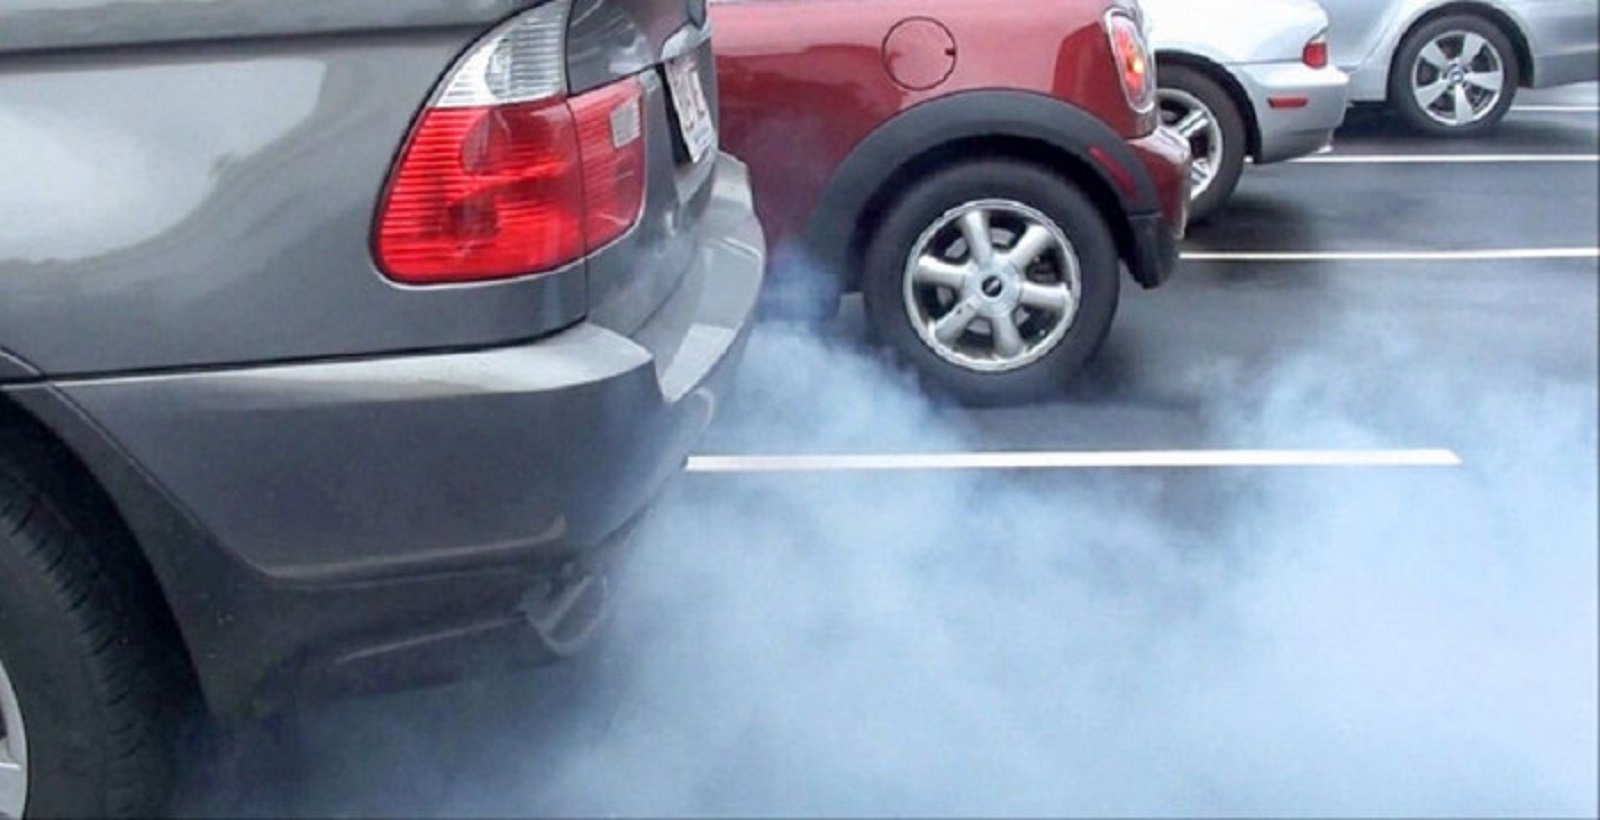 Ống xả ô tô thải ra khói trắng vào mùa đông có đáng lo? - Ảnh 1.